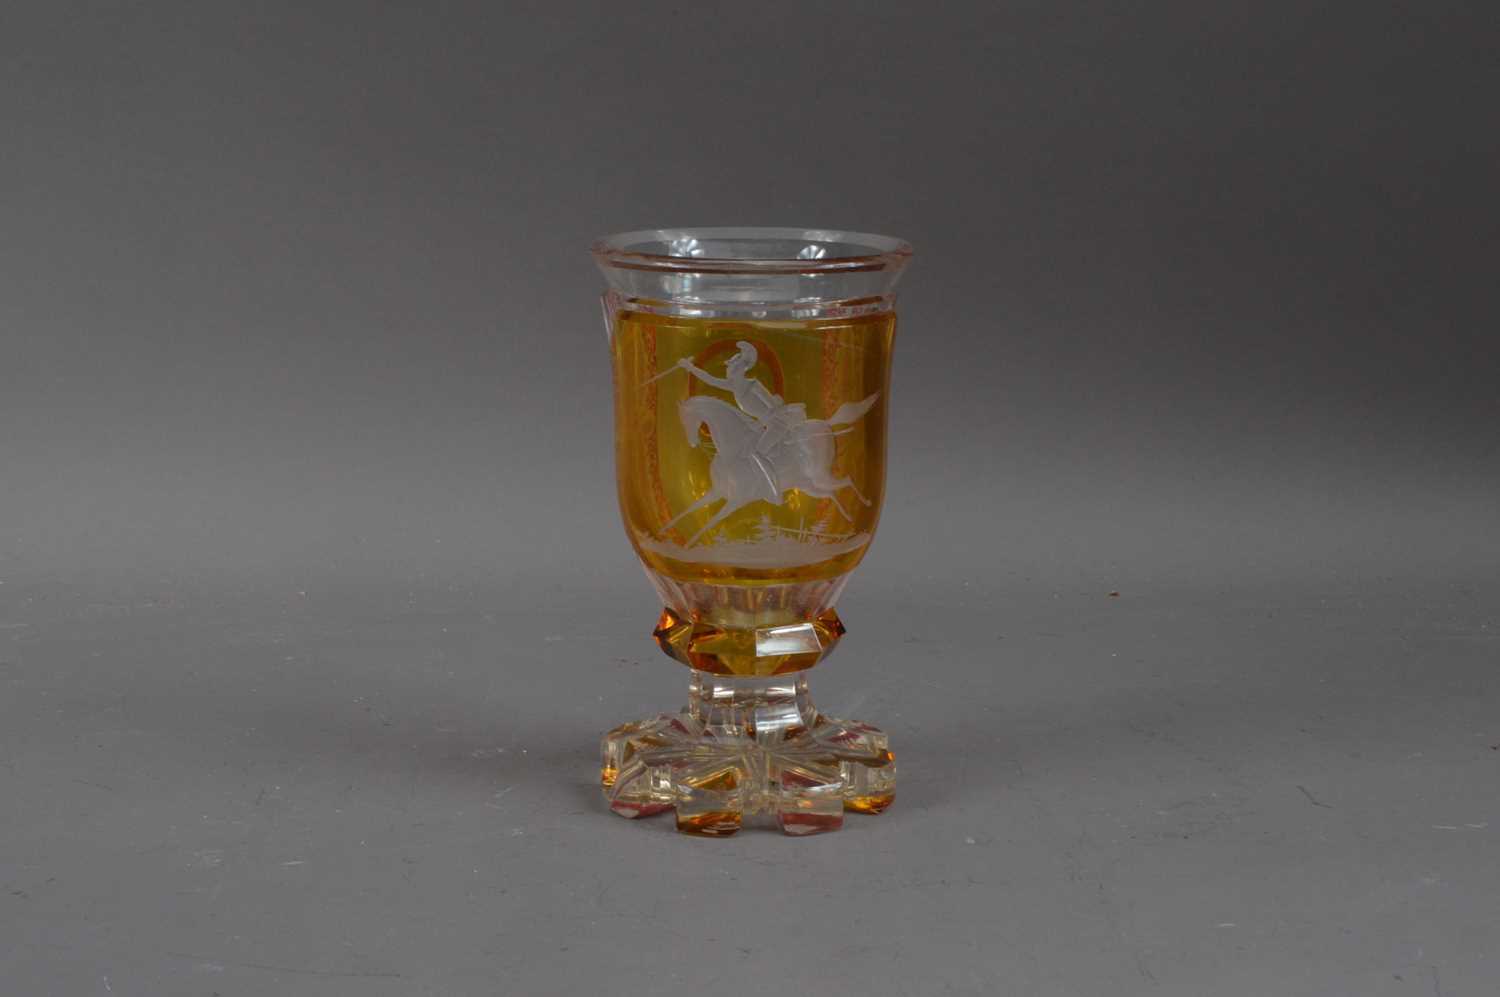 Lot 194 - A Bohemian glass goblet